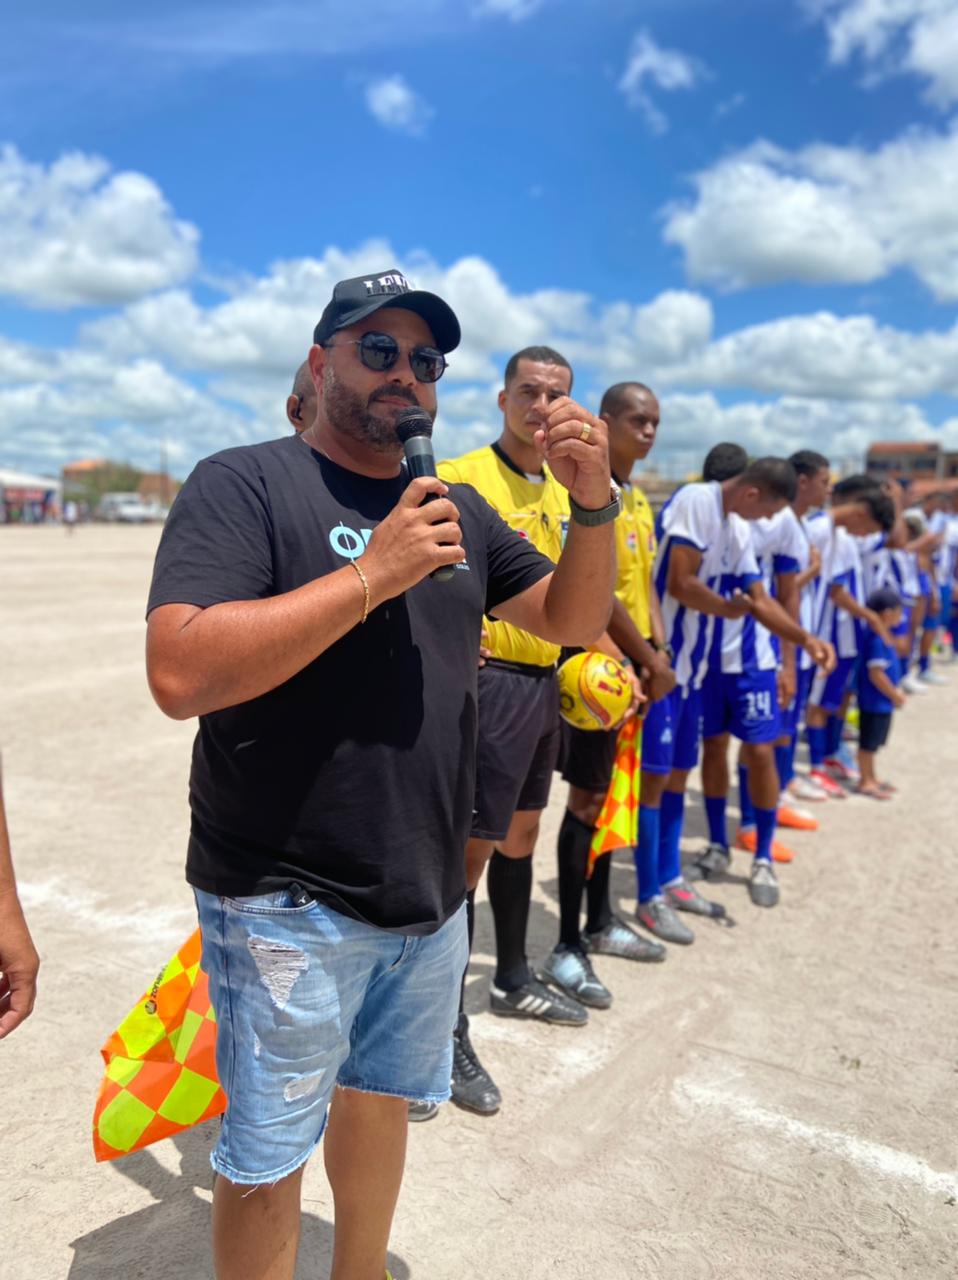 Real Ponto Chique vence a grande final do Campeonato Municipal de Futebol de Ipecaetá